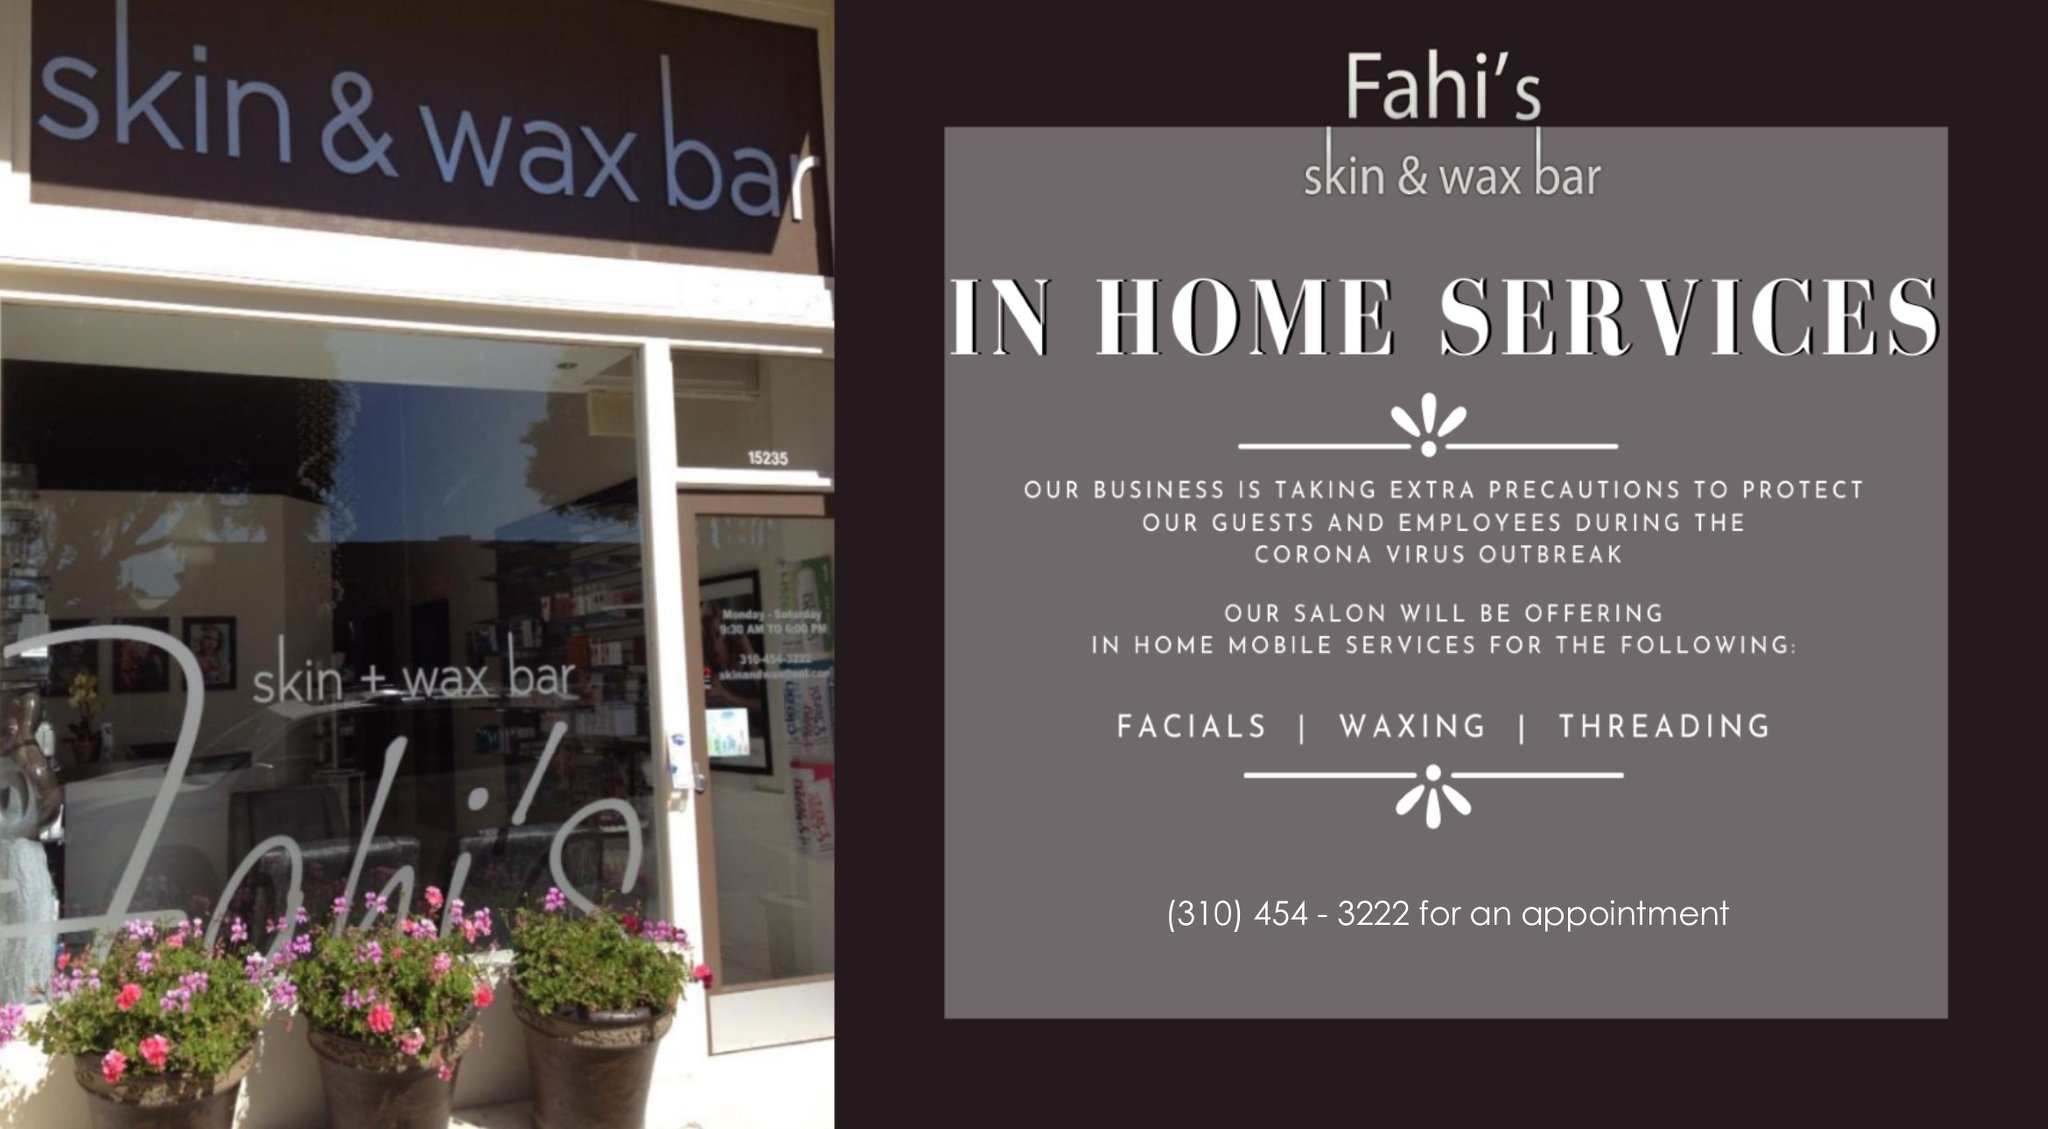 Fahi's Skin and Wax Bar